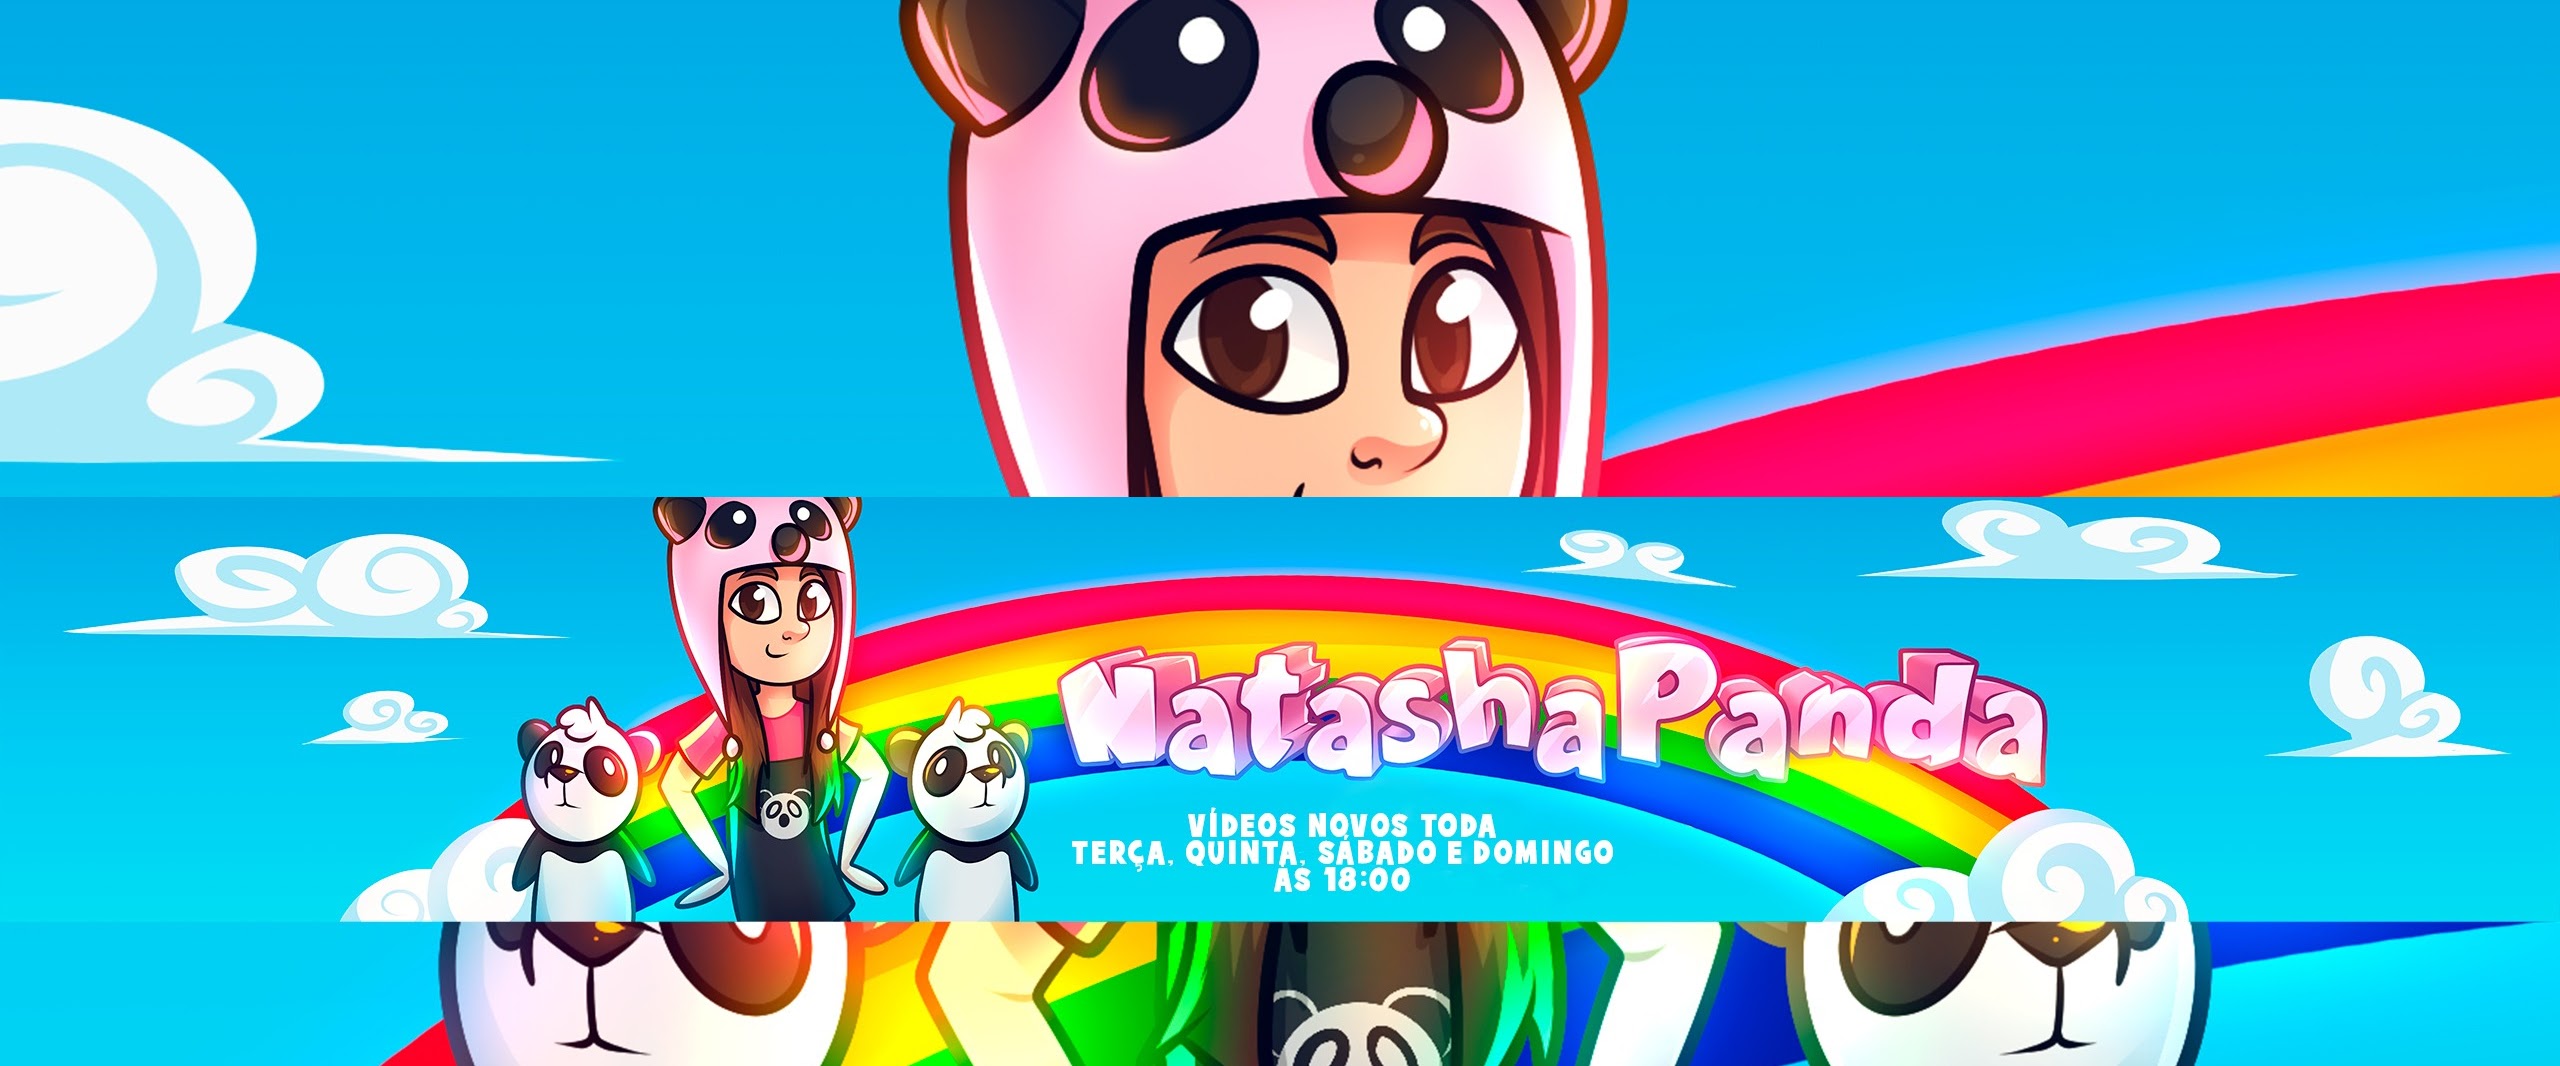 Natasha Panda comenta sobre o clipe de “Bem Mais Colorido